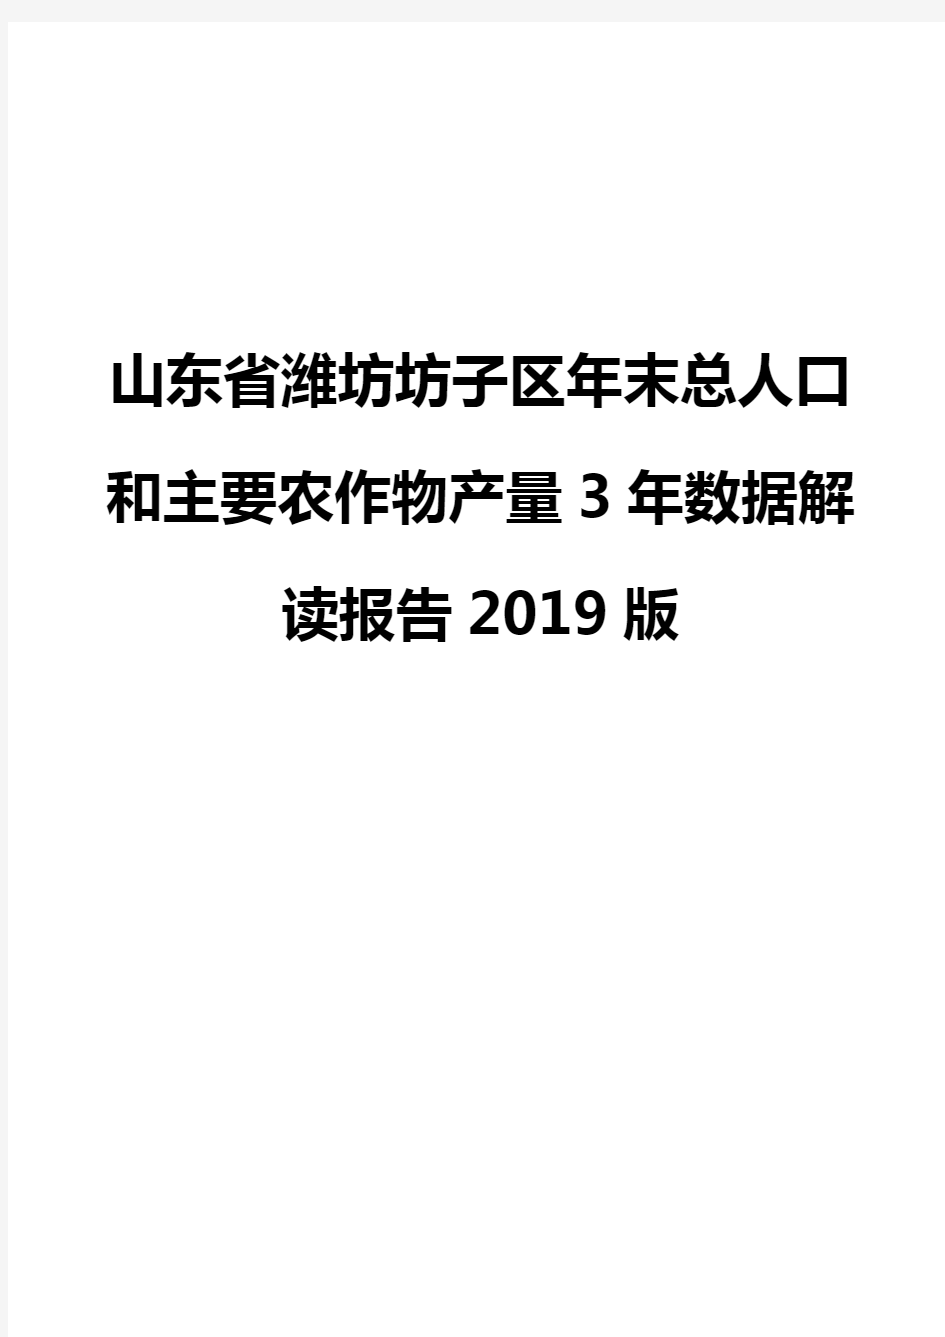 山东省潍坊坊子区年末总人口和主要农作物产量3年数据解读报告2019版